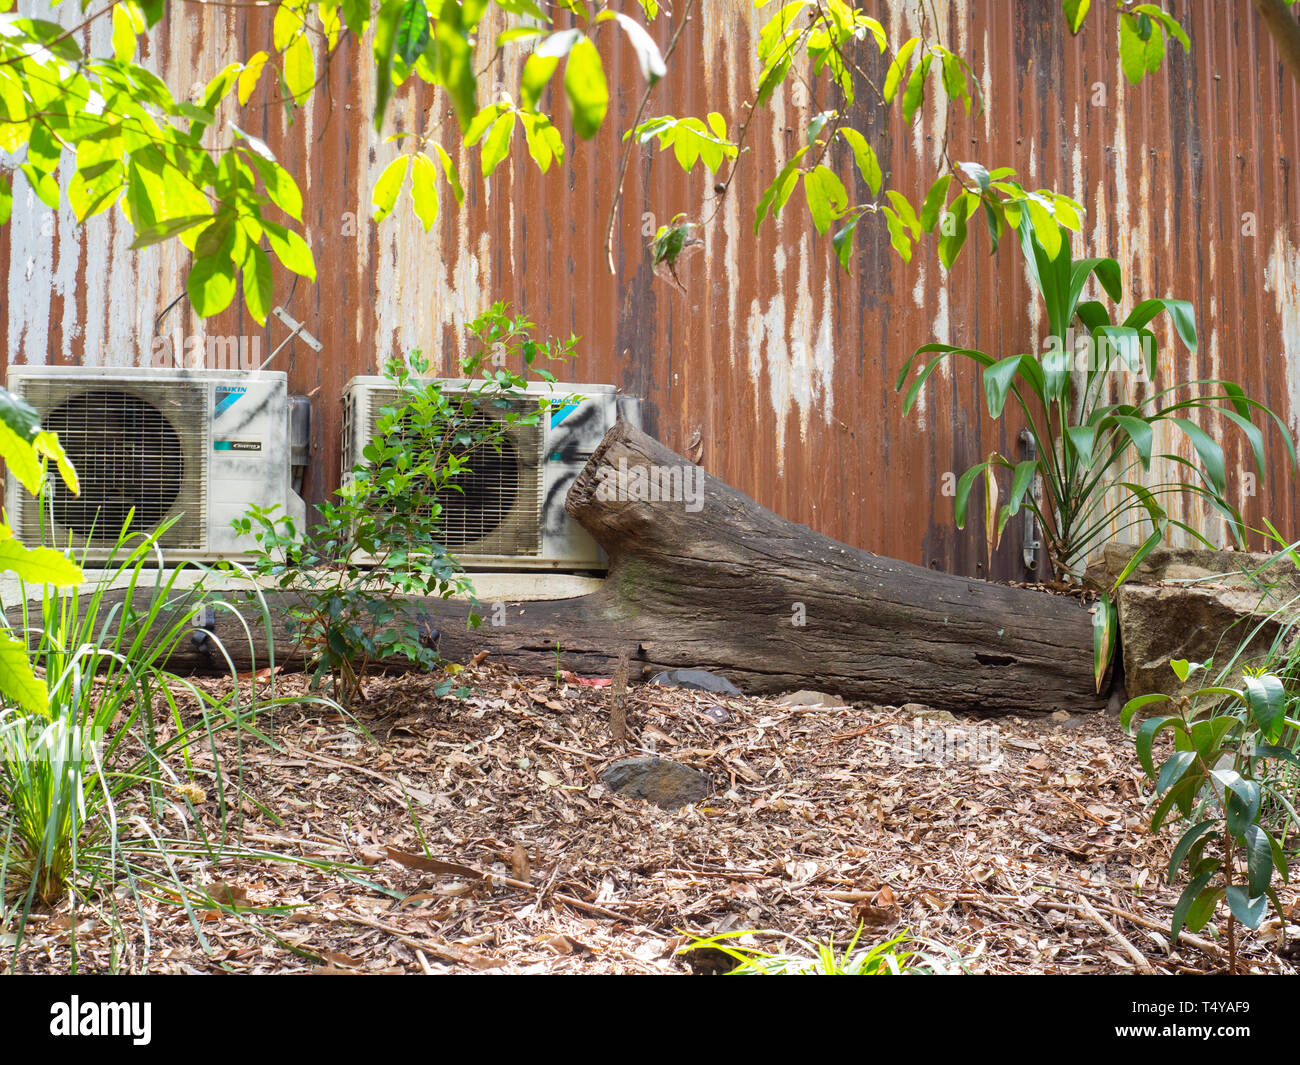 Dos unidades de aire acondicionado contra una pared de hierro oxidado en un jardín. Foto de stock